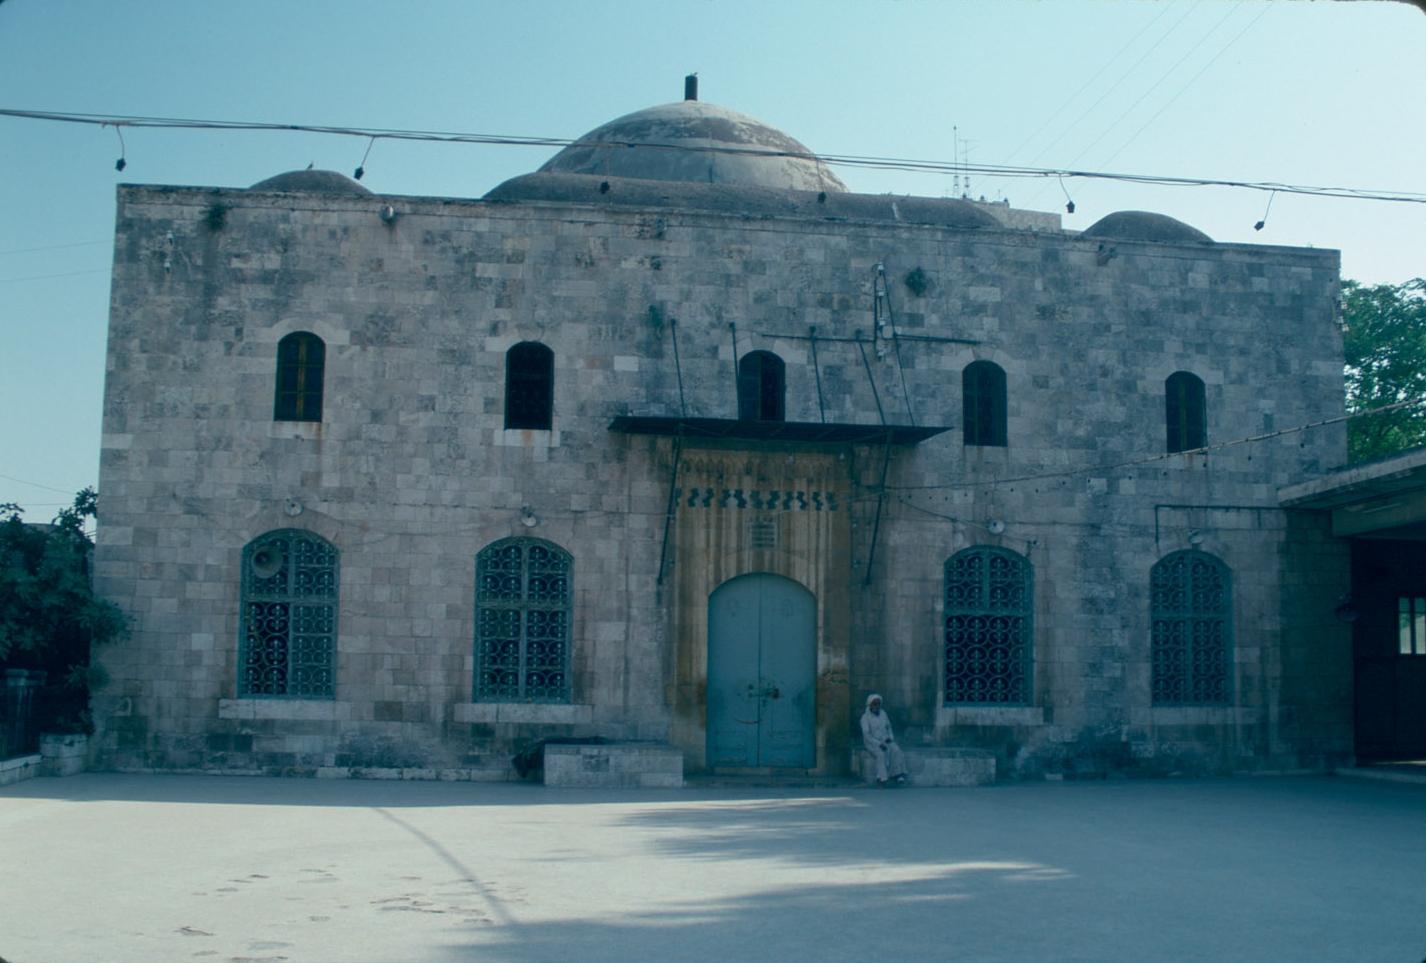 Exterior view of the sama'-khana (salamlik), looking south